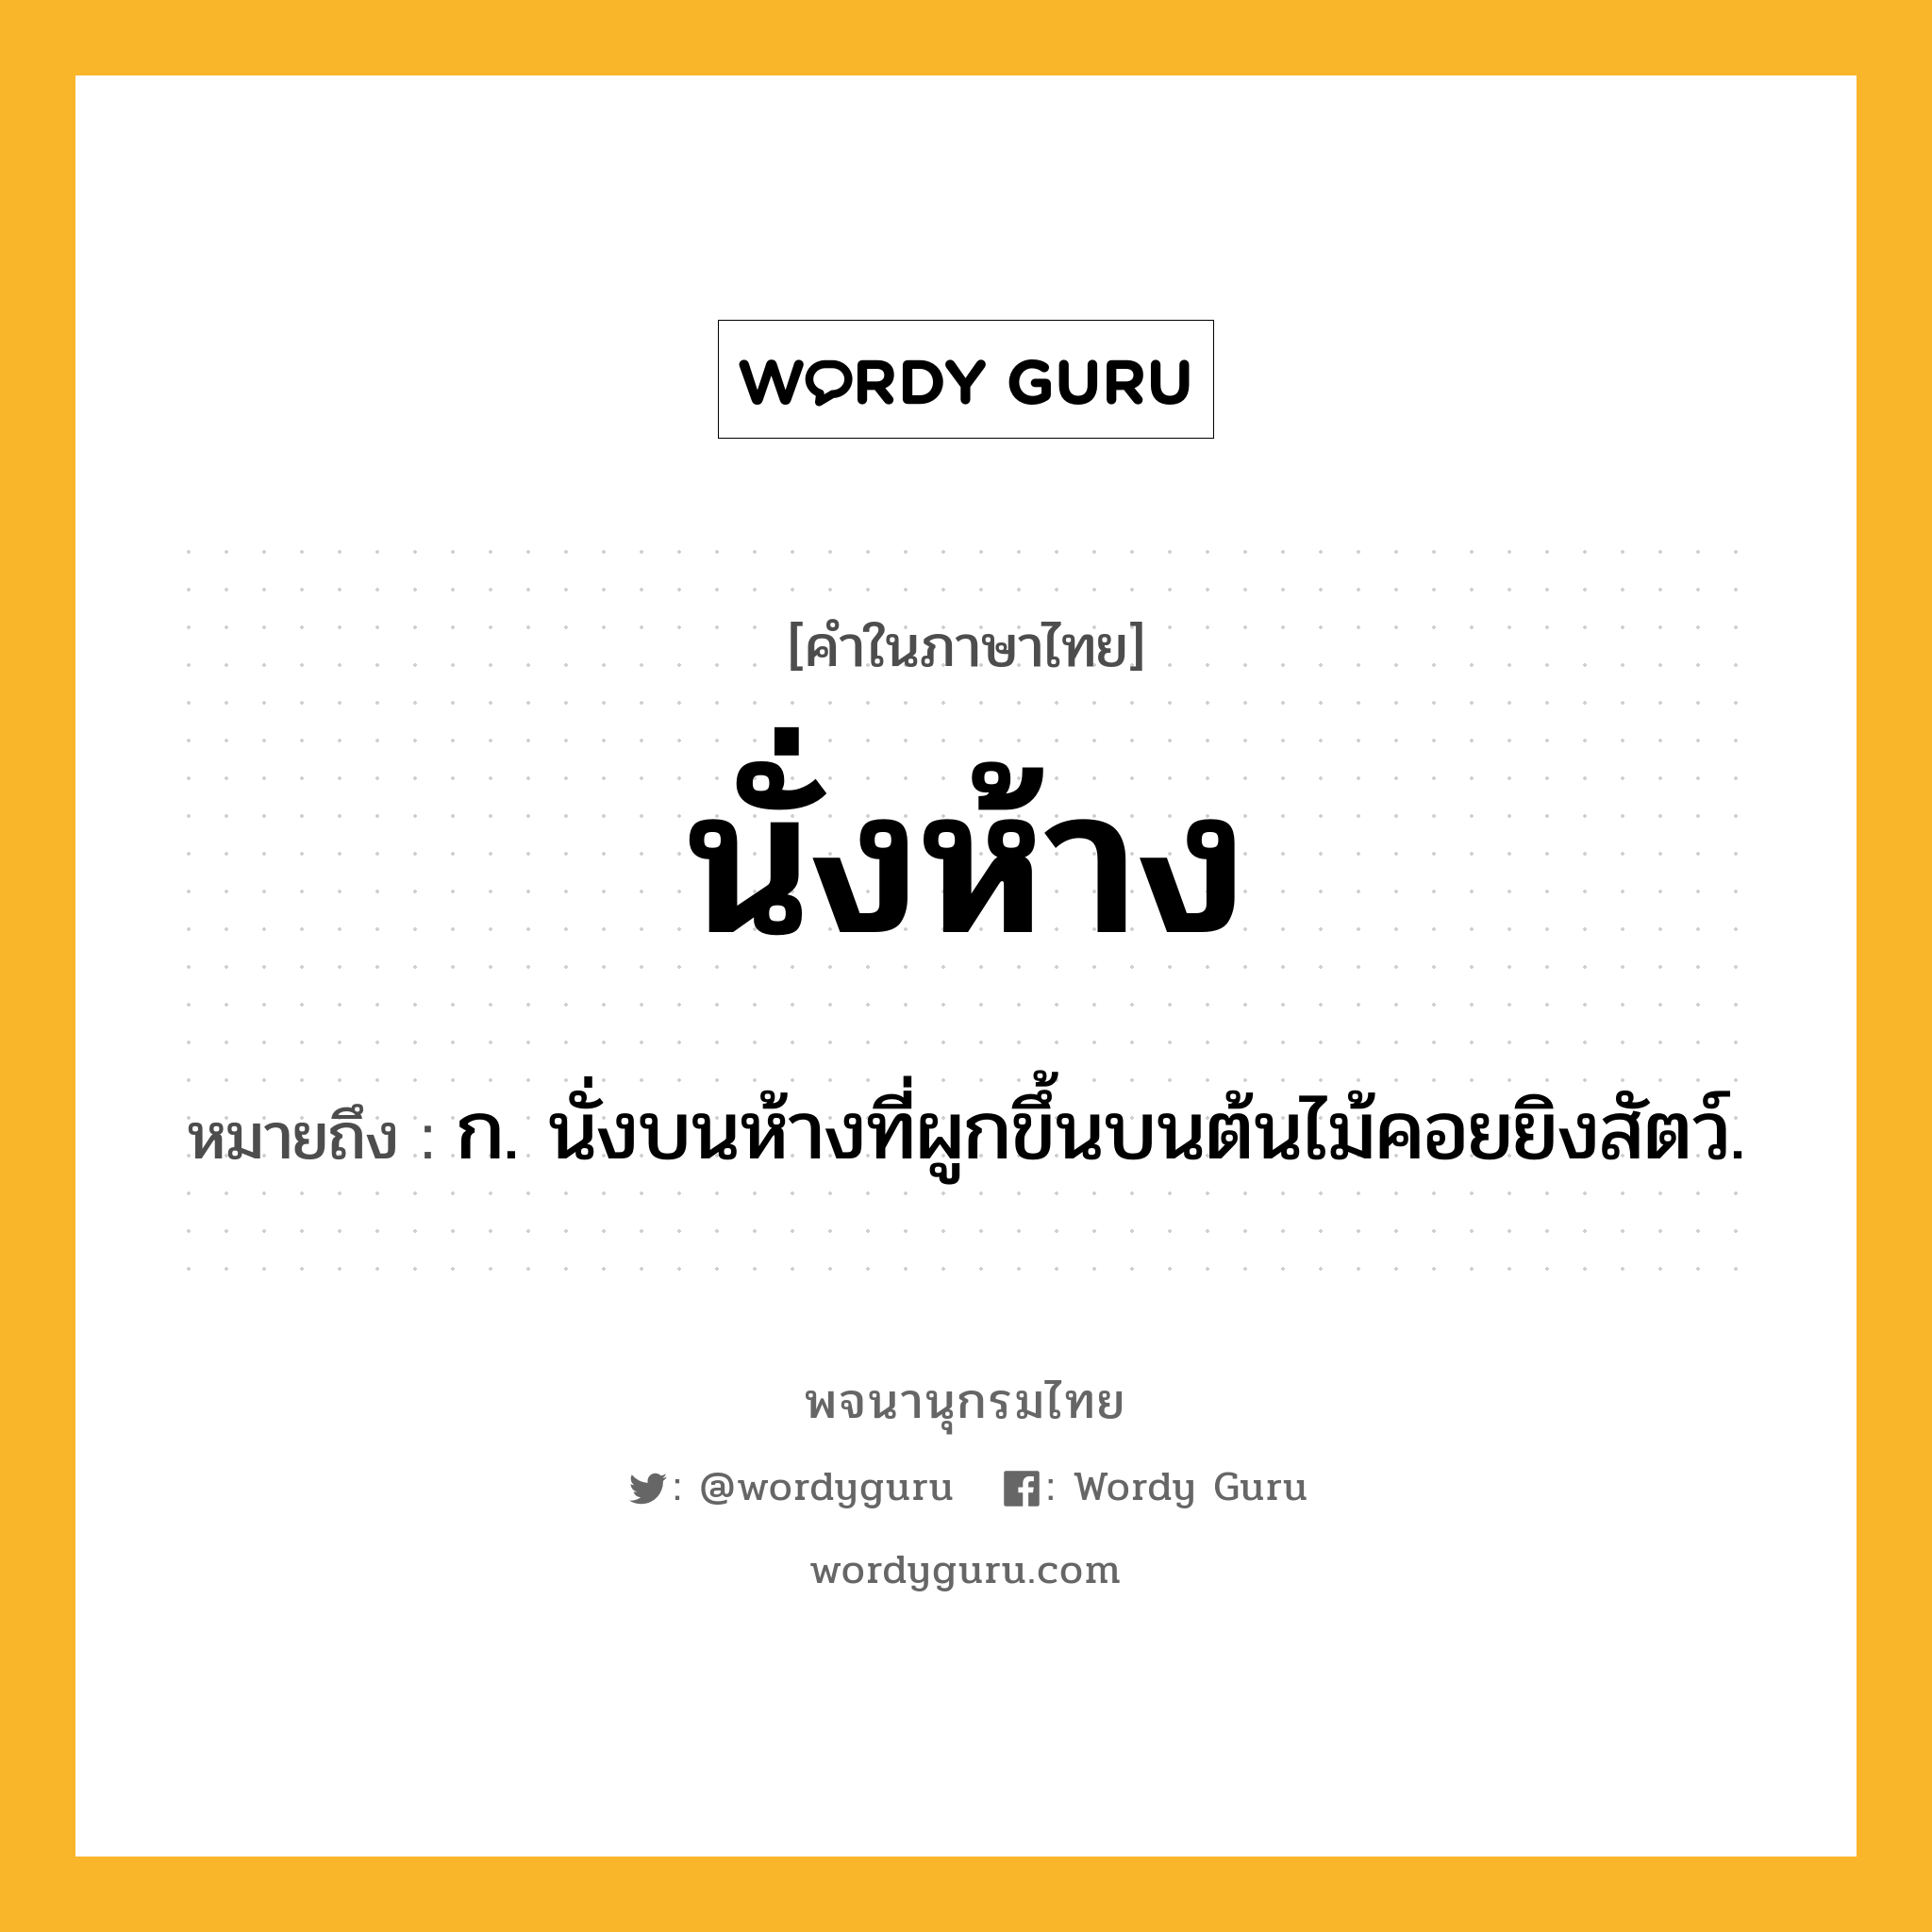 นั่งห้าง หมายถึงอะไร?, คำในภาษาไทย นั่งห้าง หมายถึง ก. นั่งบนห้างที่ผูกขึ้นบนต้นไม้คอยยิงสัตว์.